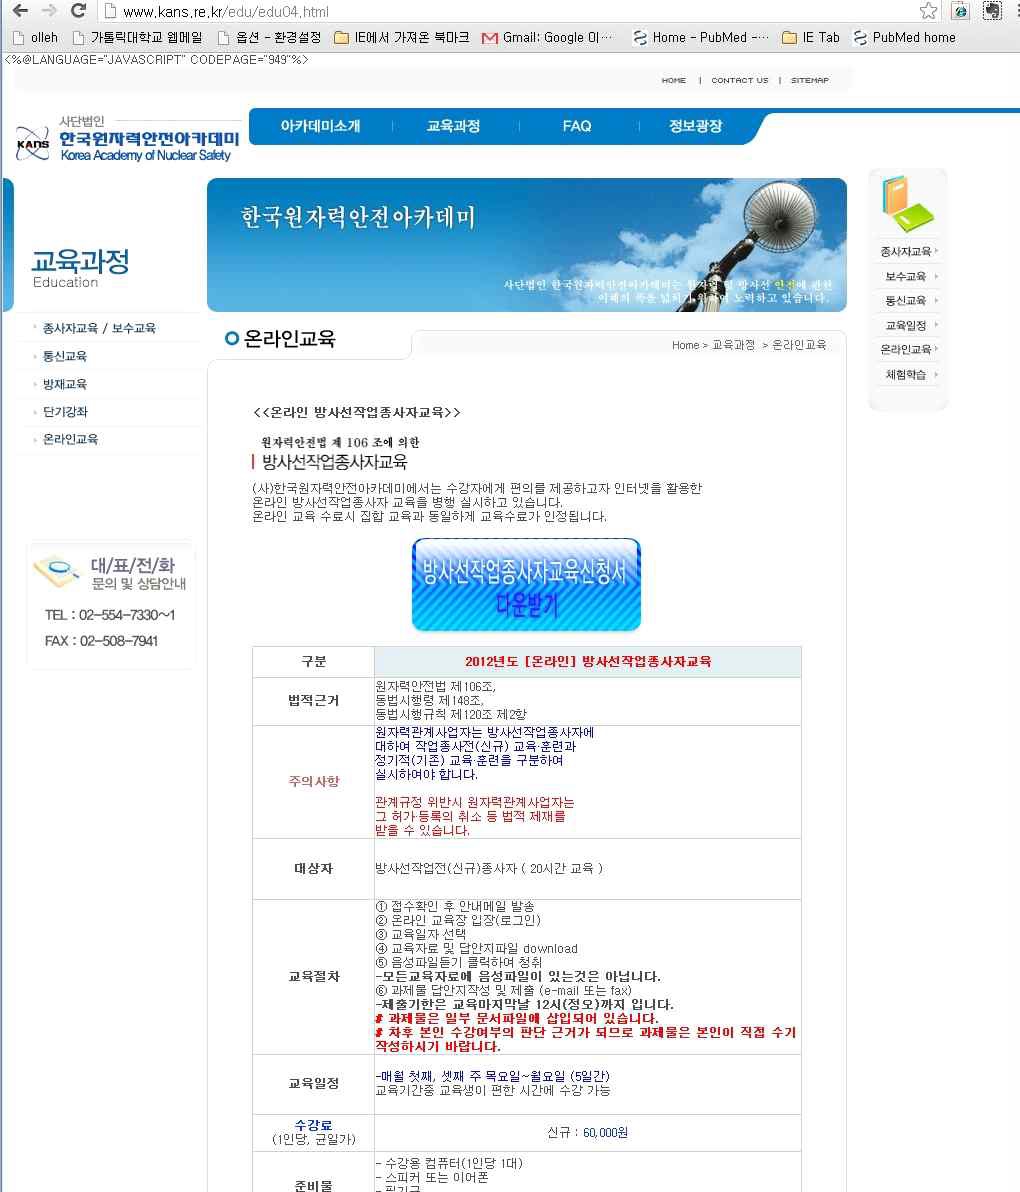 그림 2. 한국원자력 아카데미 의 온라인 교육 홈페이지